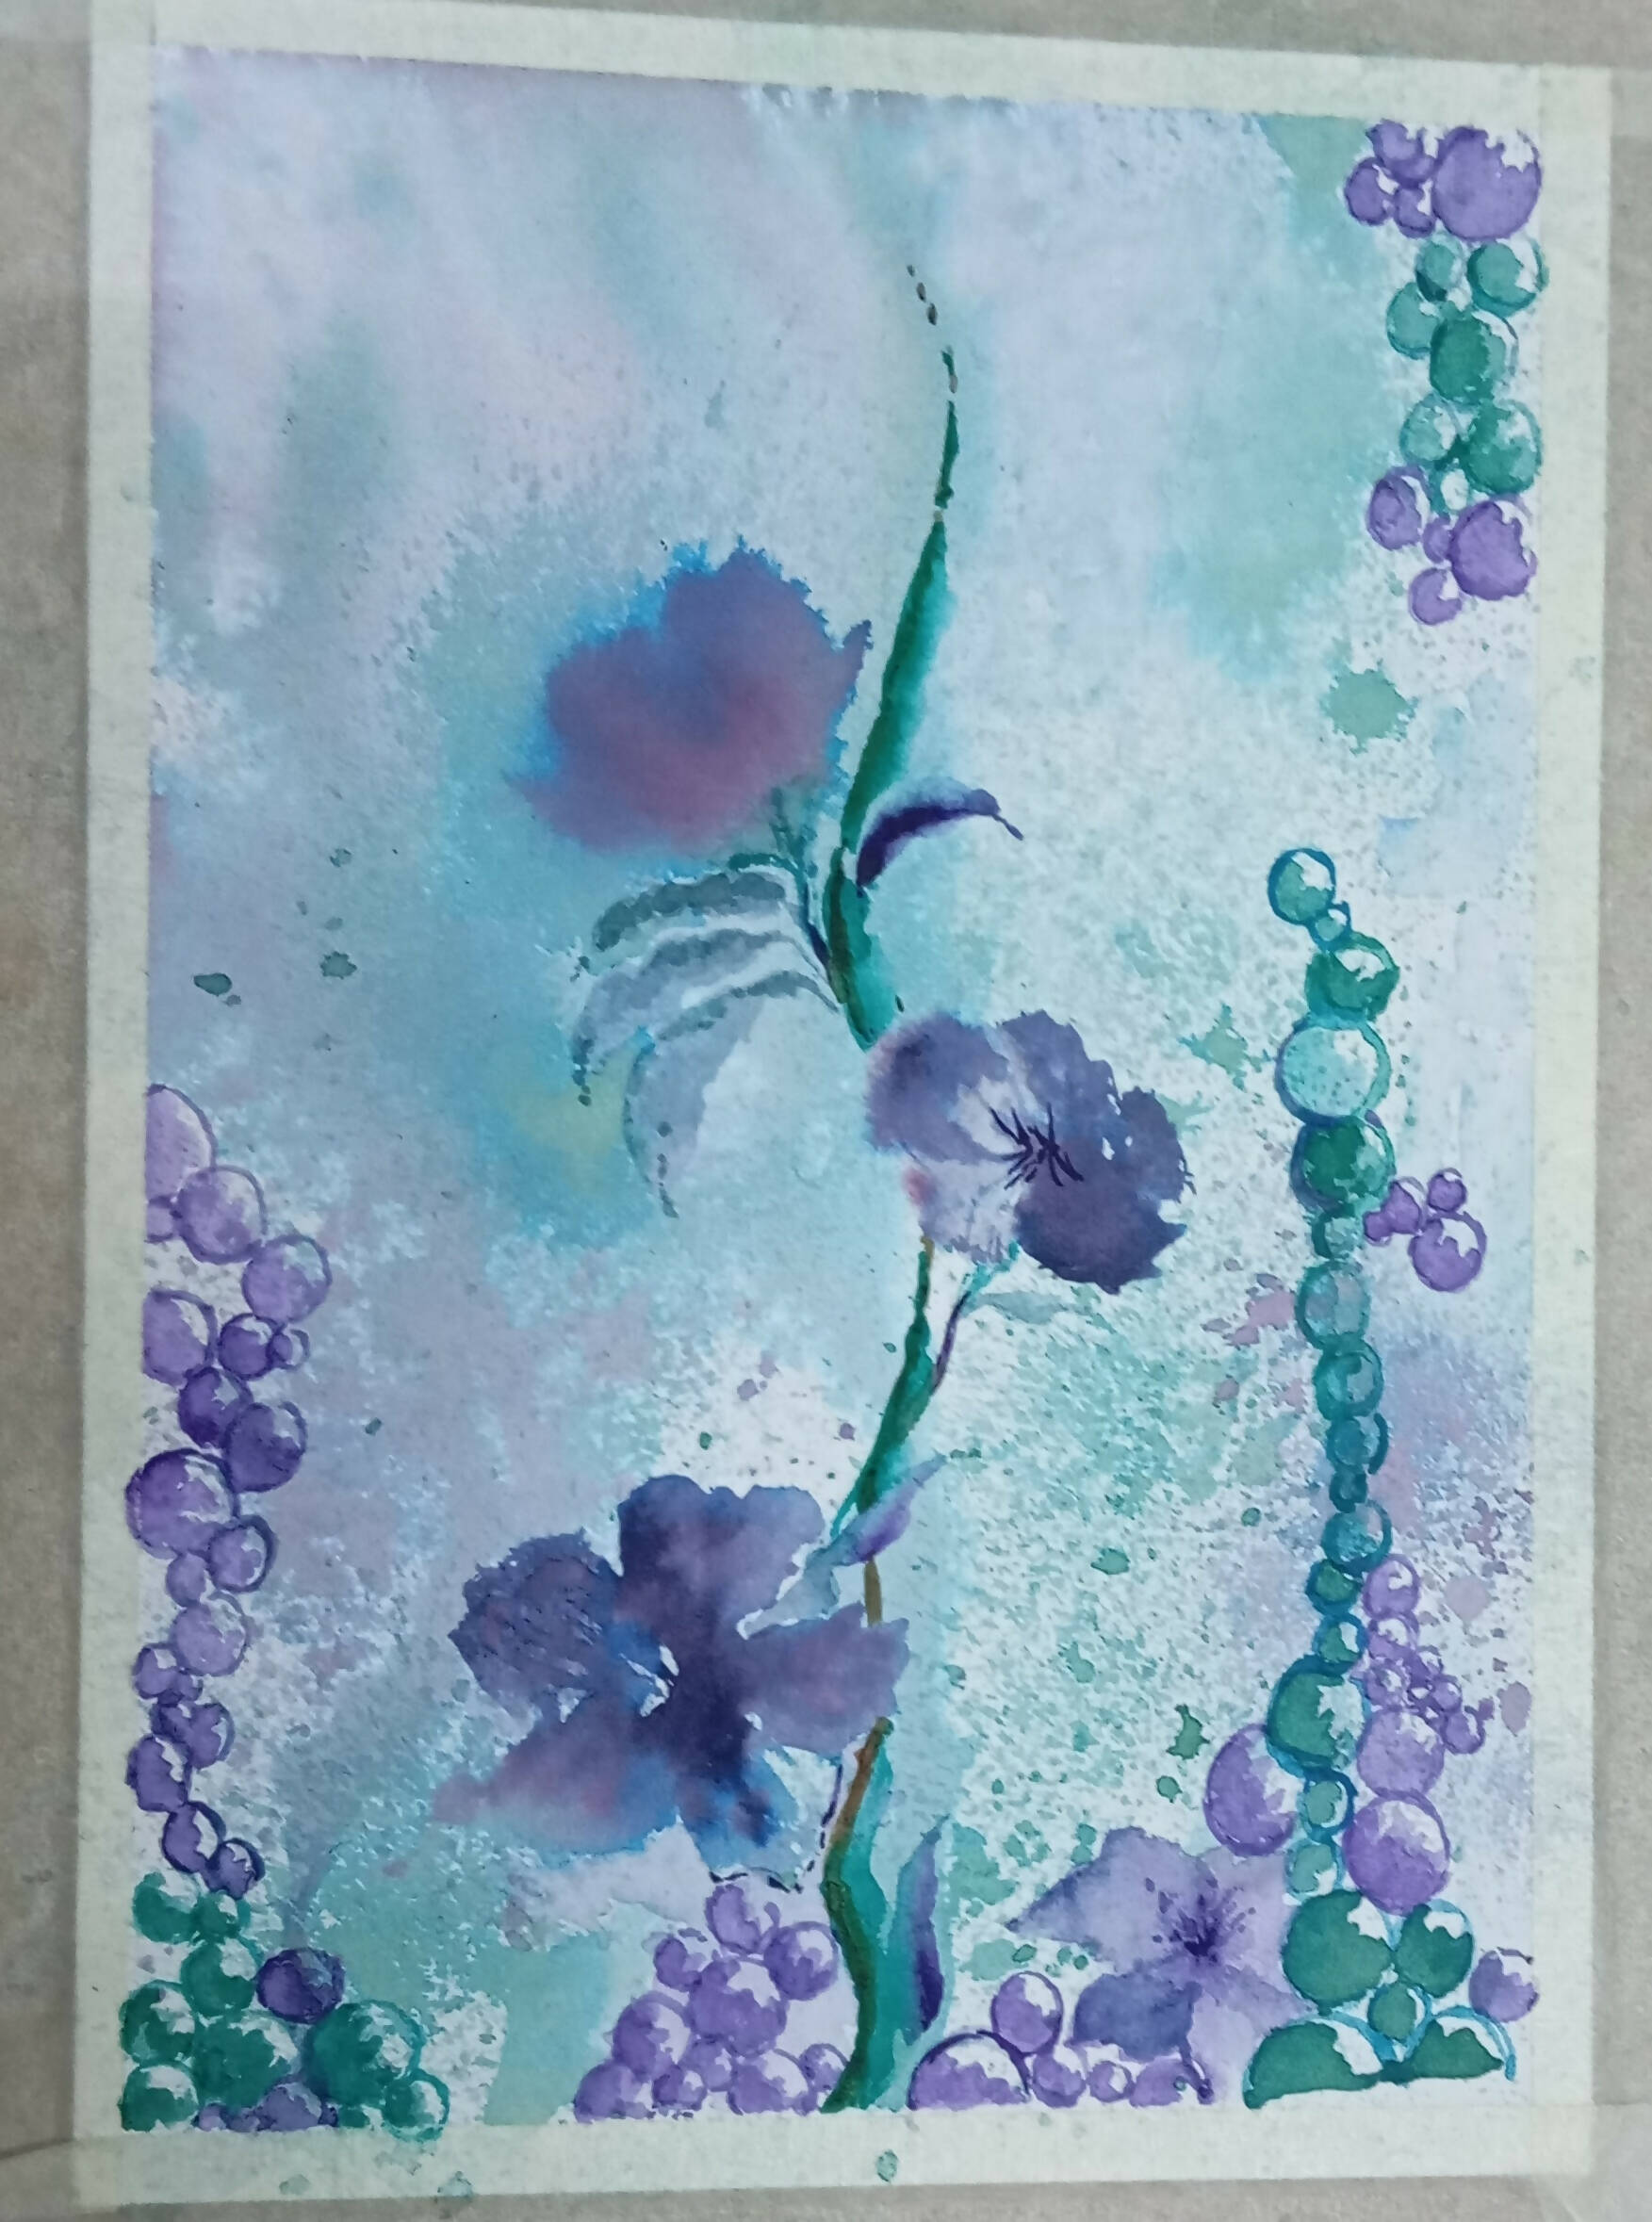 Purple florets